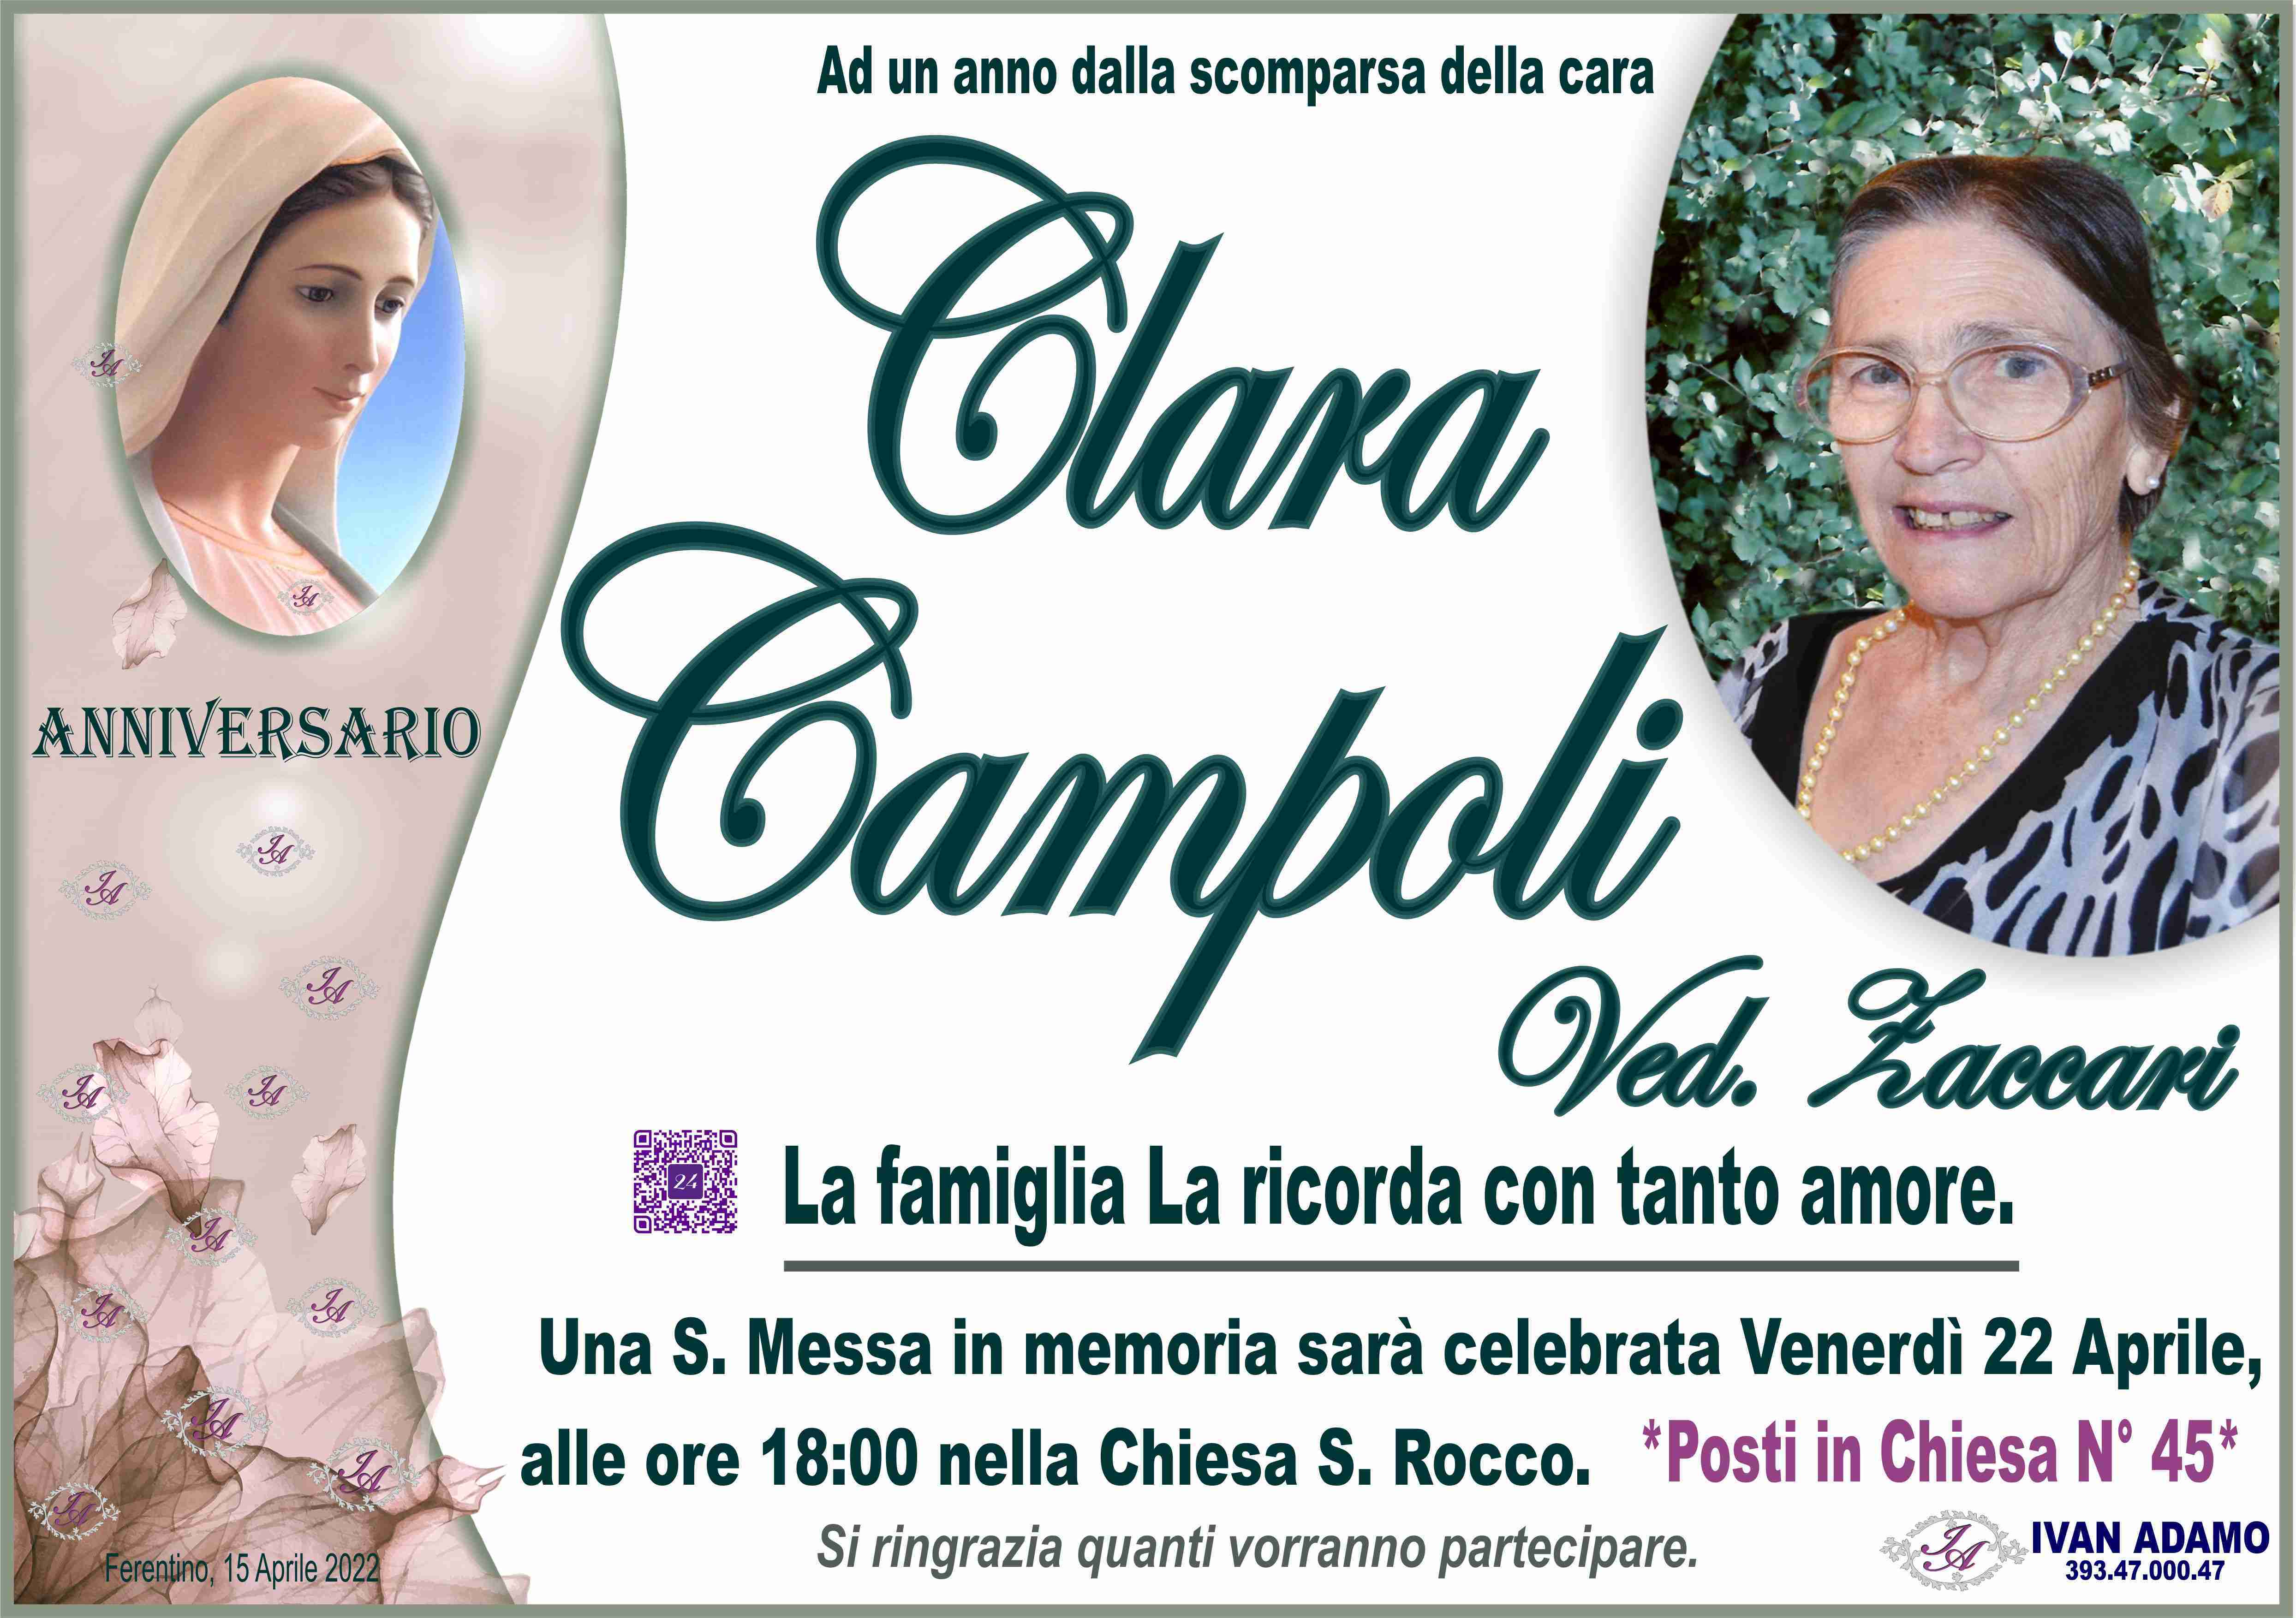 Clara Campoli